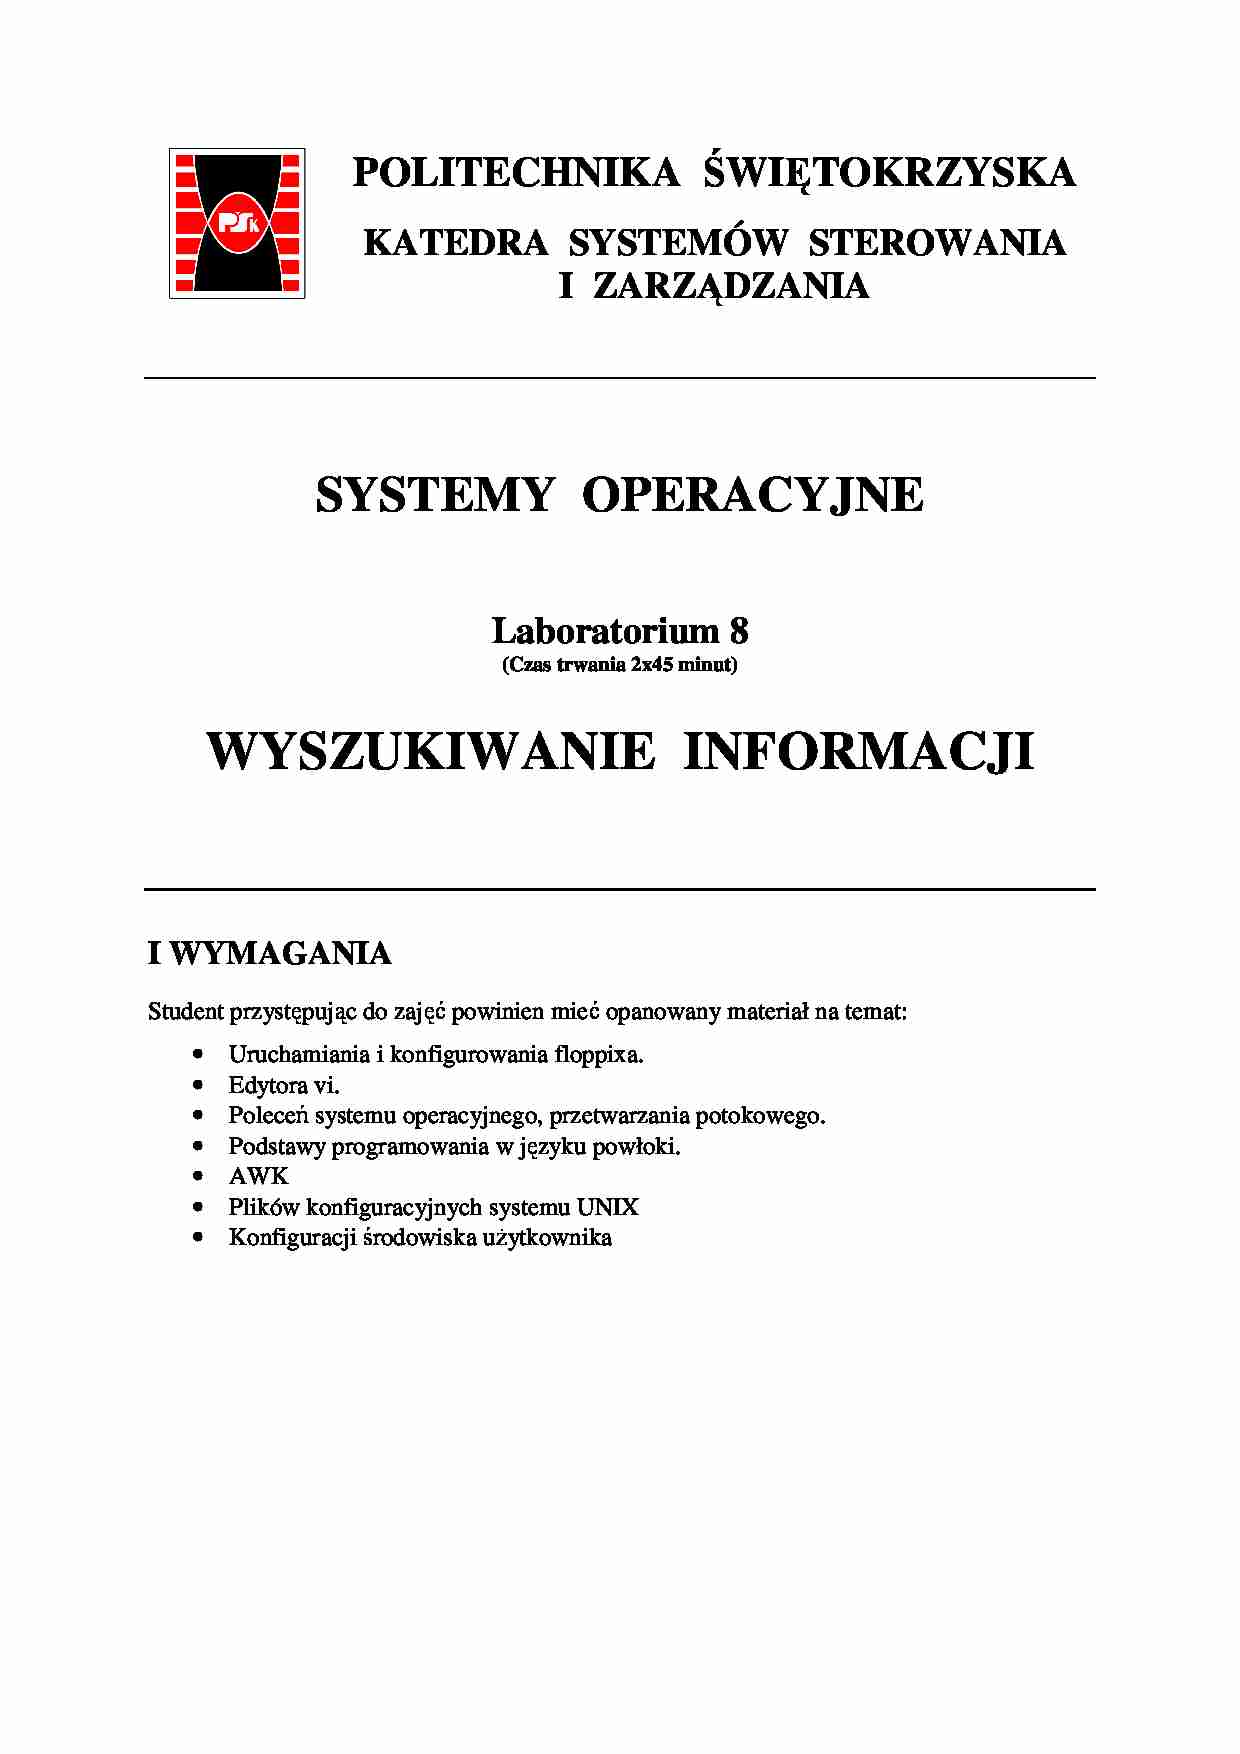 Systemy operacyjne, skrypty - strona 1